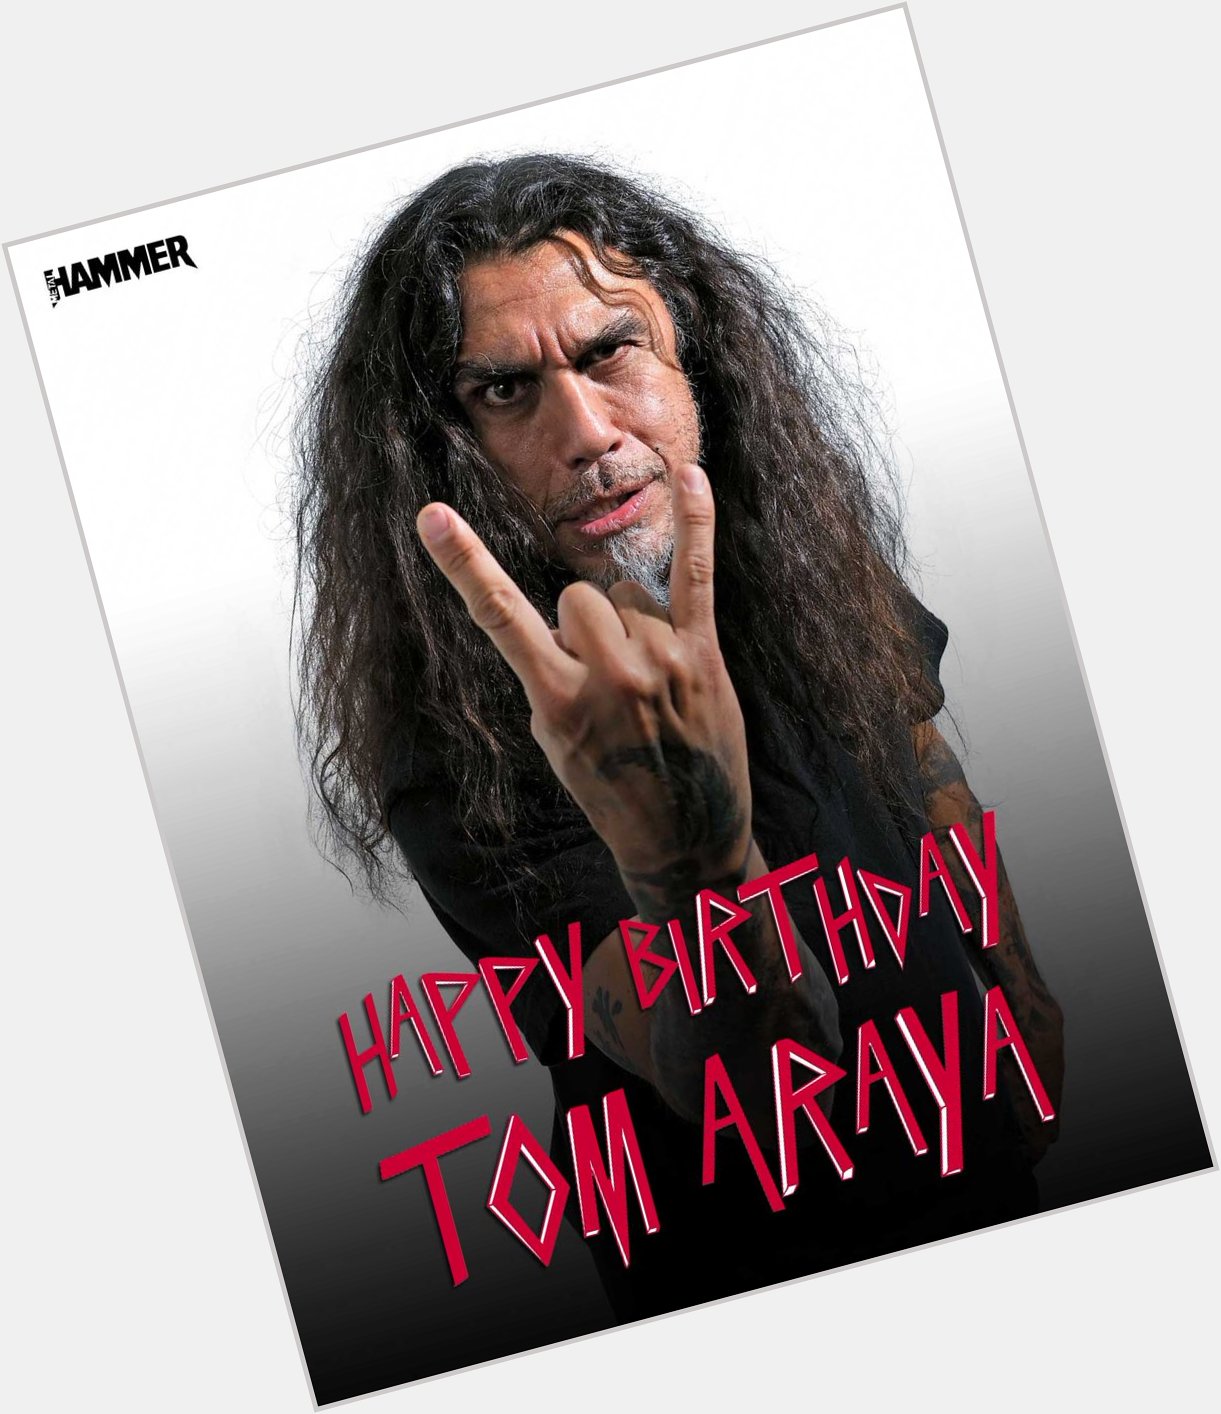  yo tom araya happy birthday 